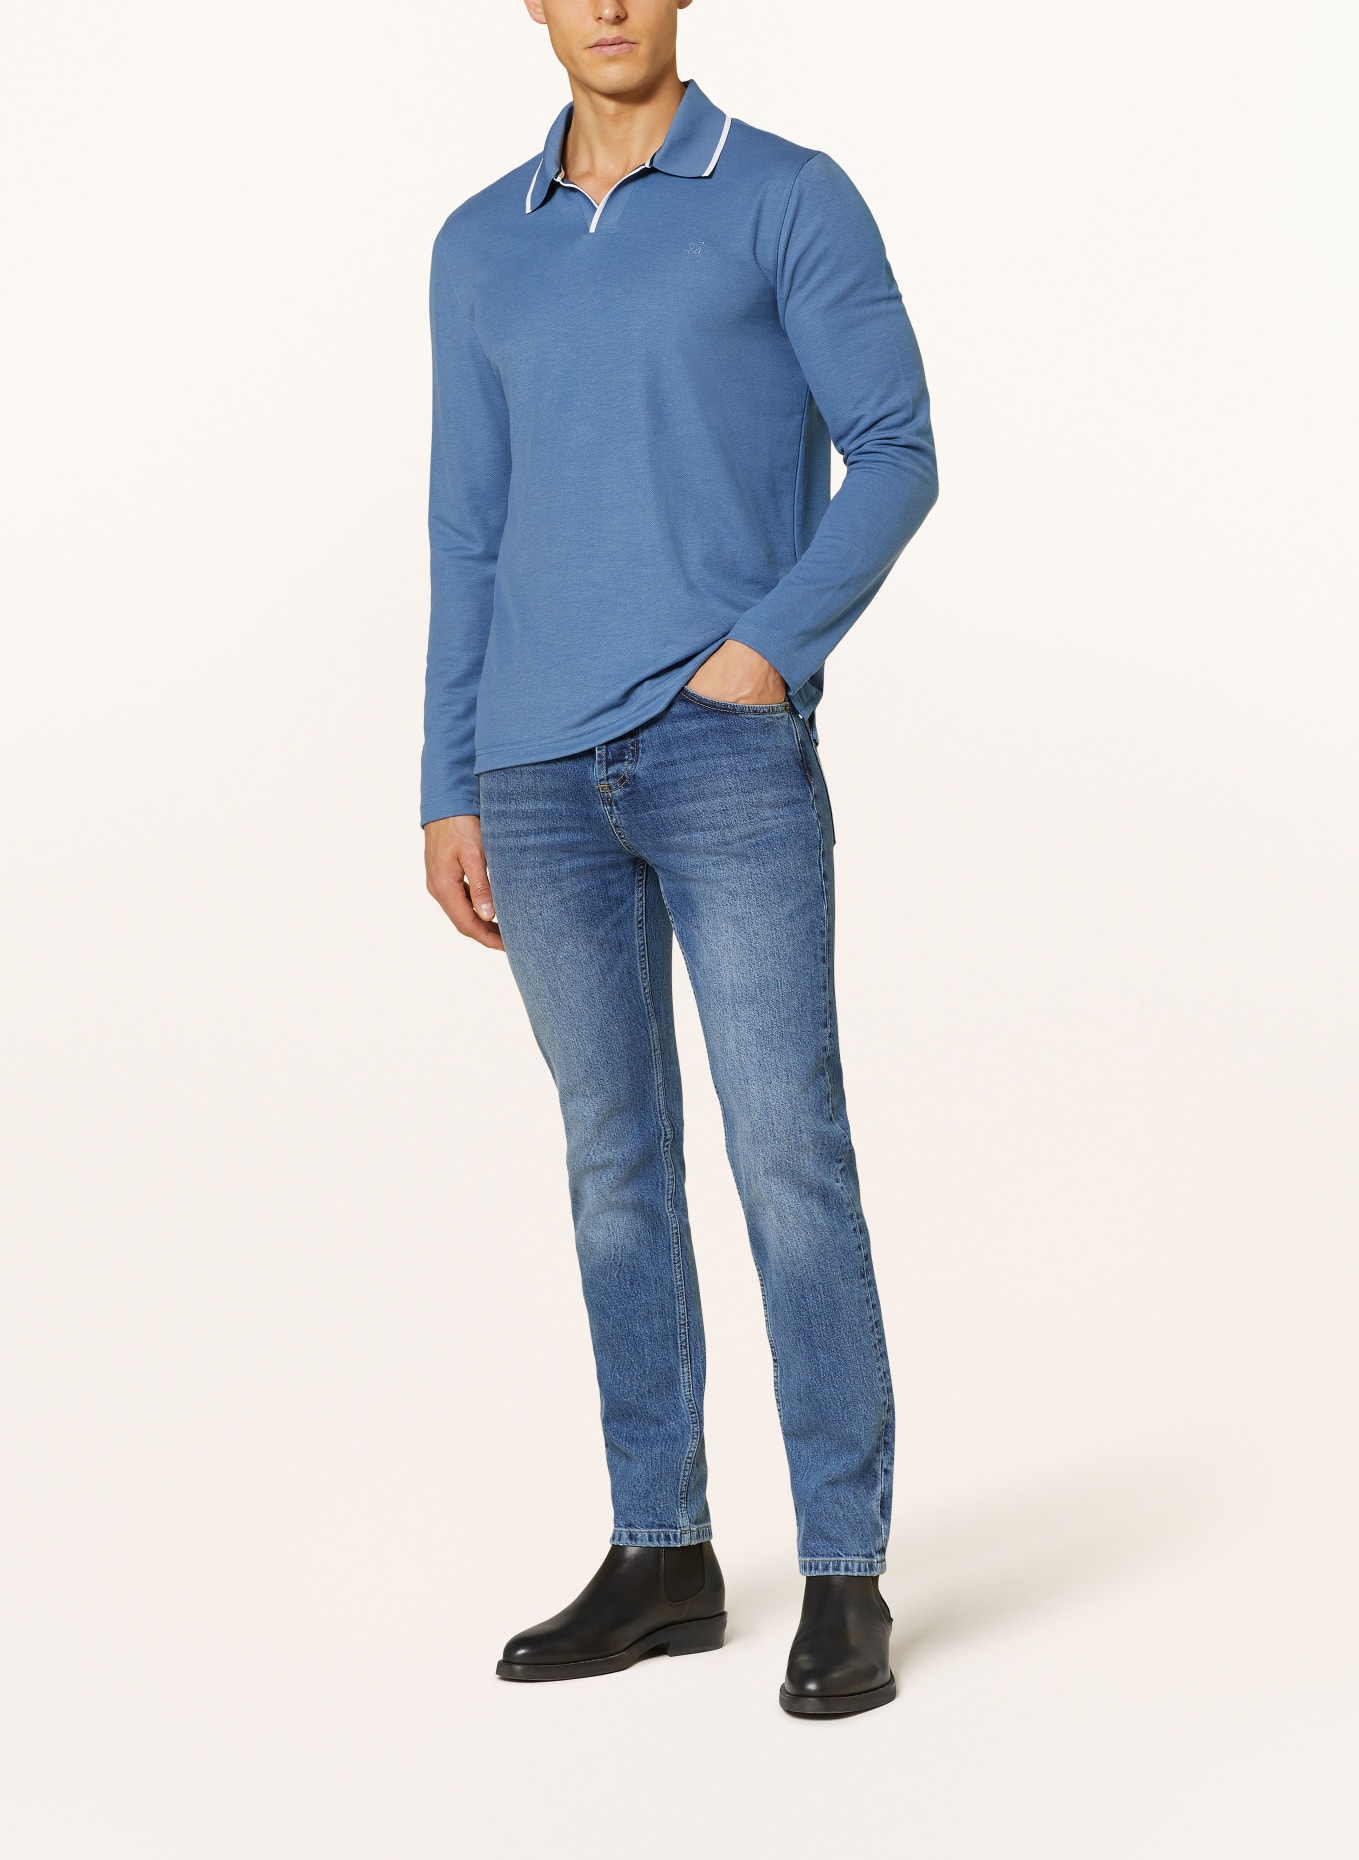 TED BAKER Piqué polo shirt MASTE regular fit, Color: BLUE (Image 2)